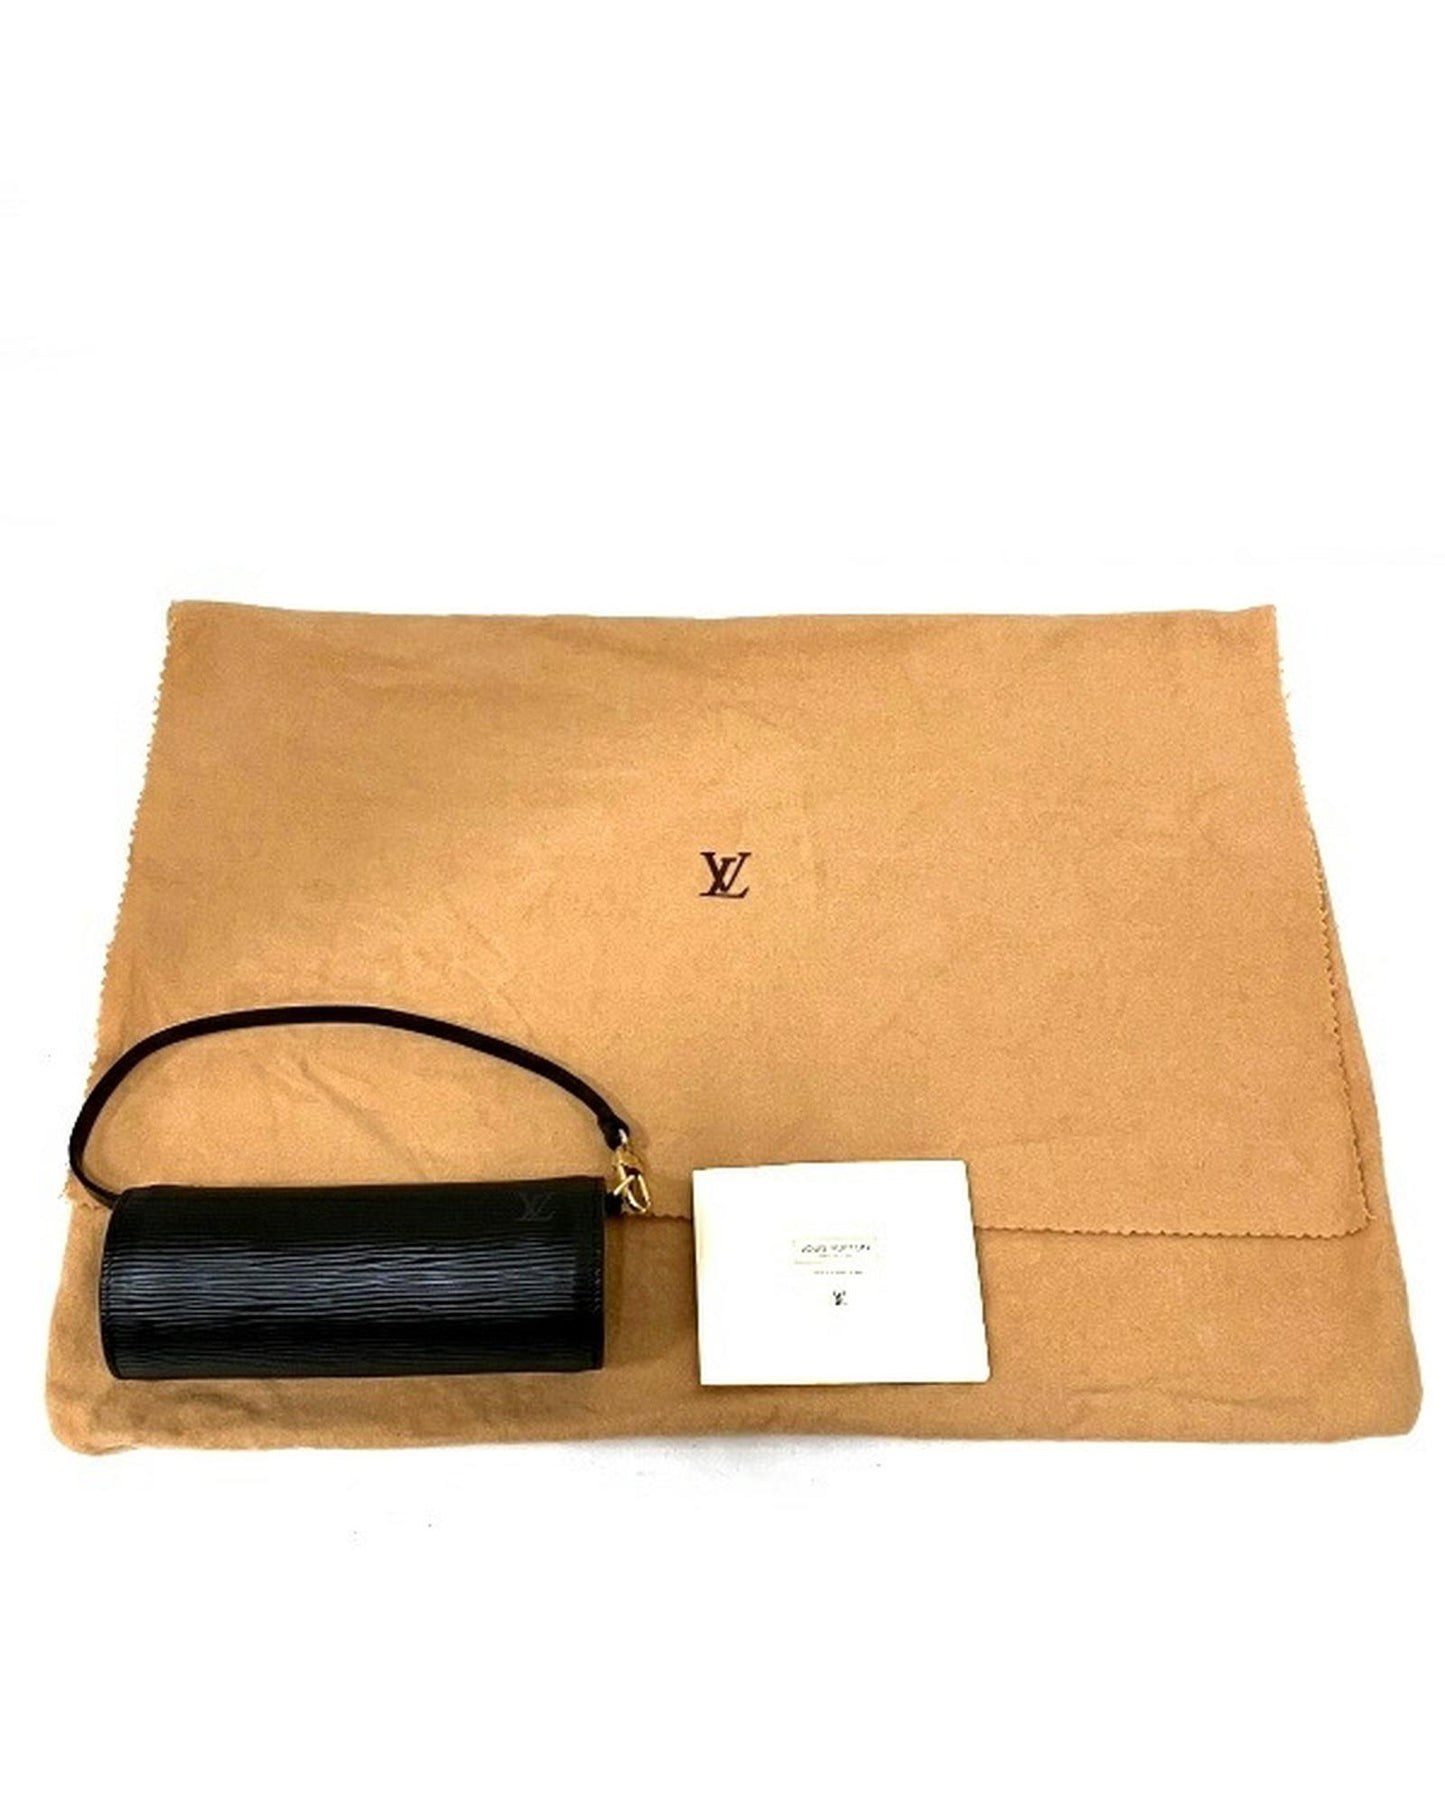 Louis Vuitton Women's Black Epi Soufflot Bag in Excellent Condition in Black